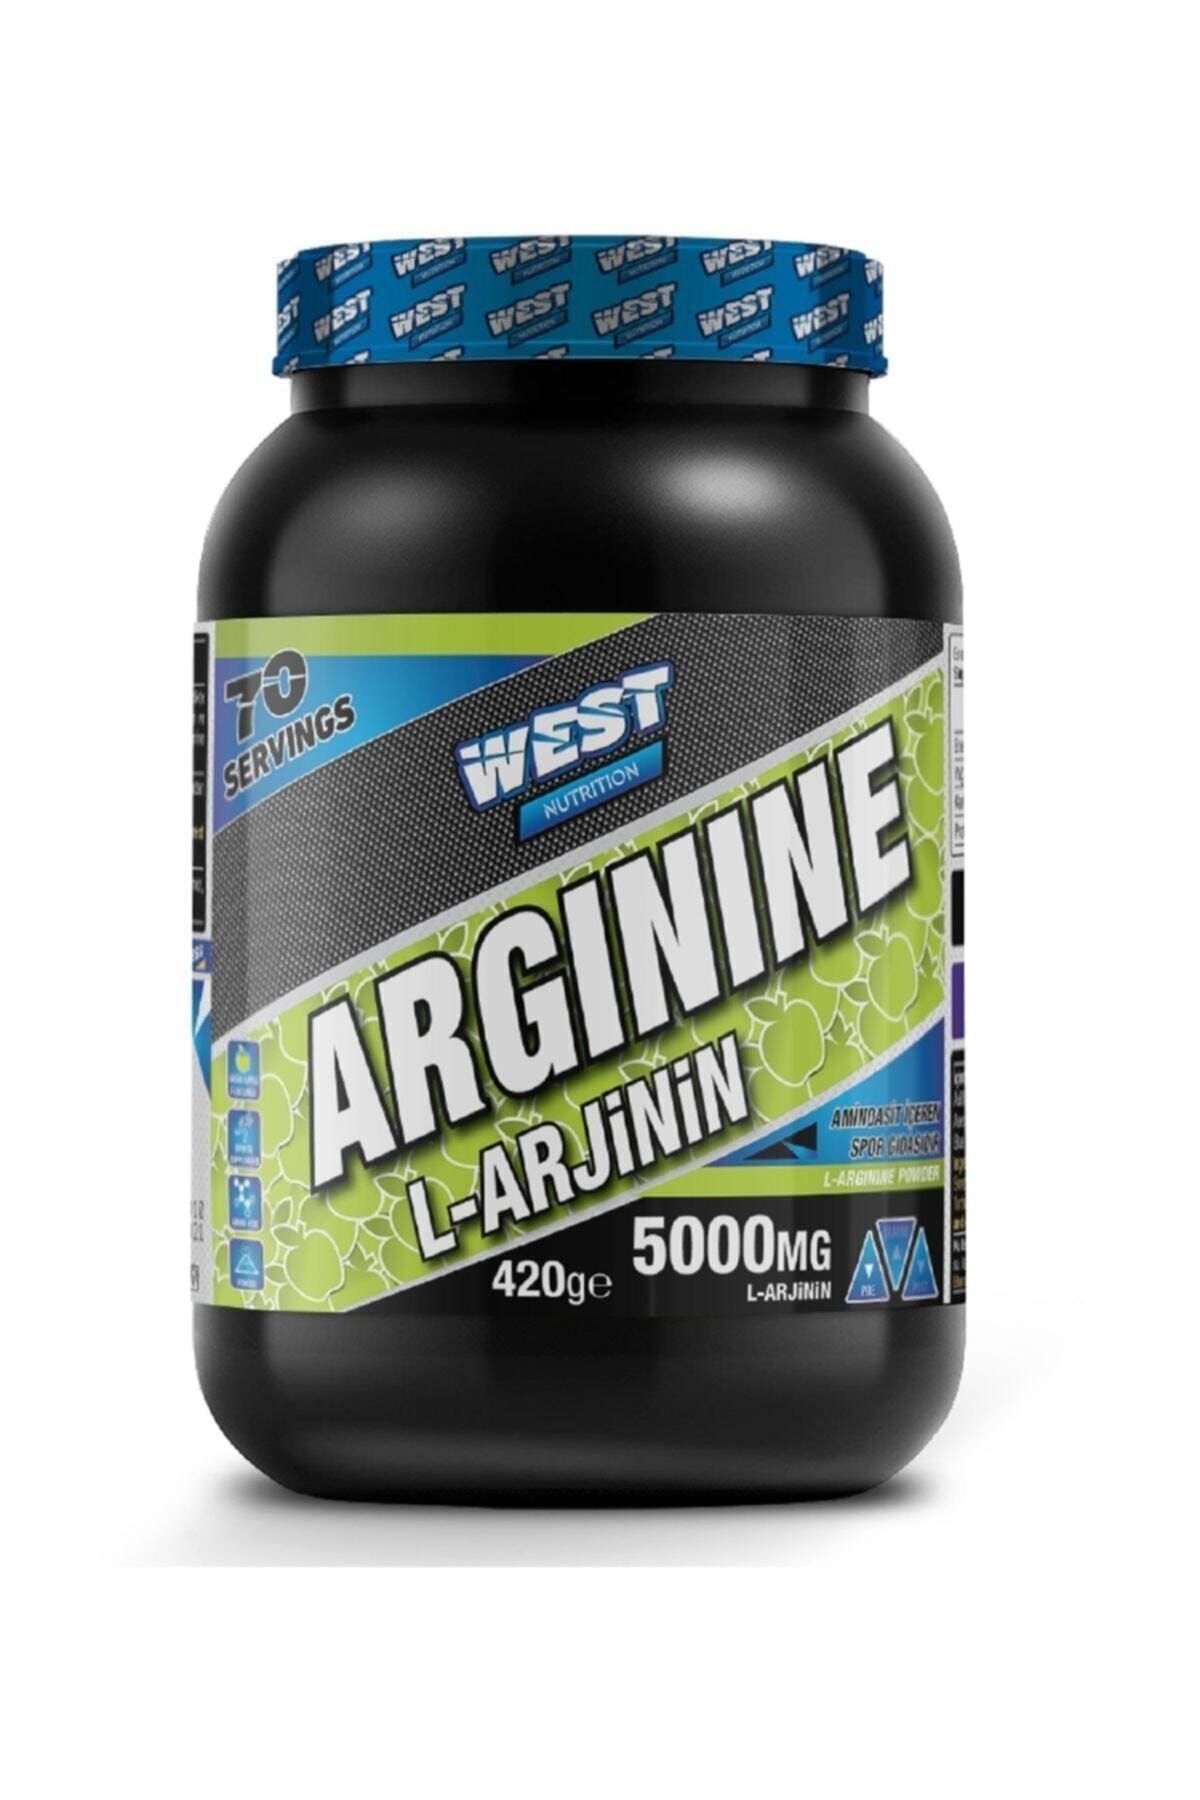 West Nutrition L Arginine ( Arjinin ) 420 Gr Yeşil Elma Aromalı